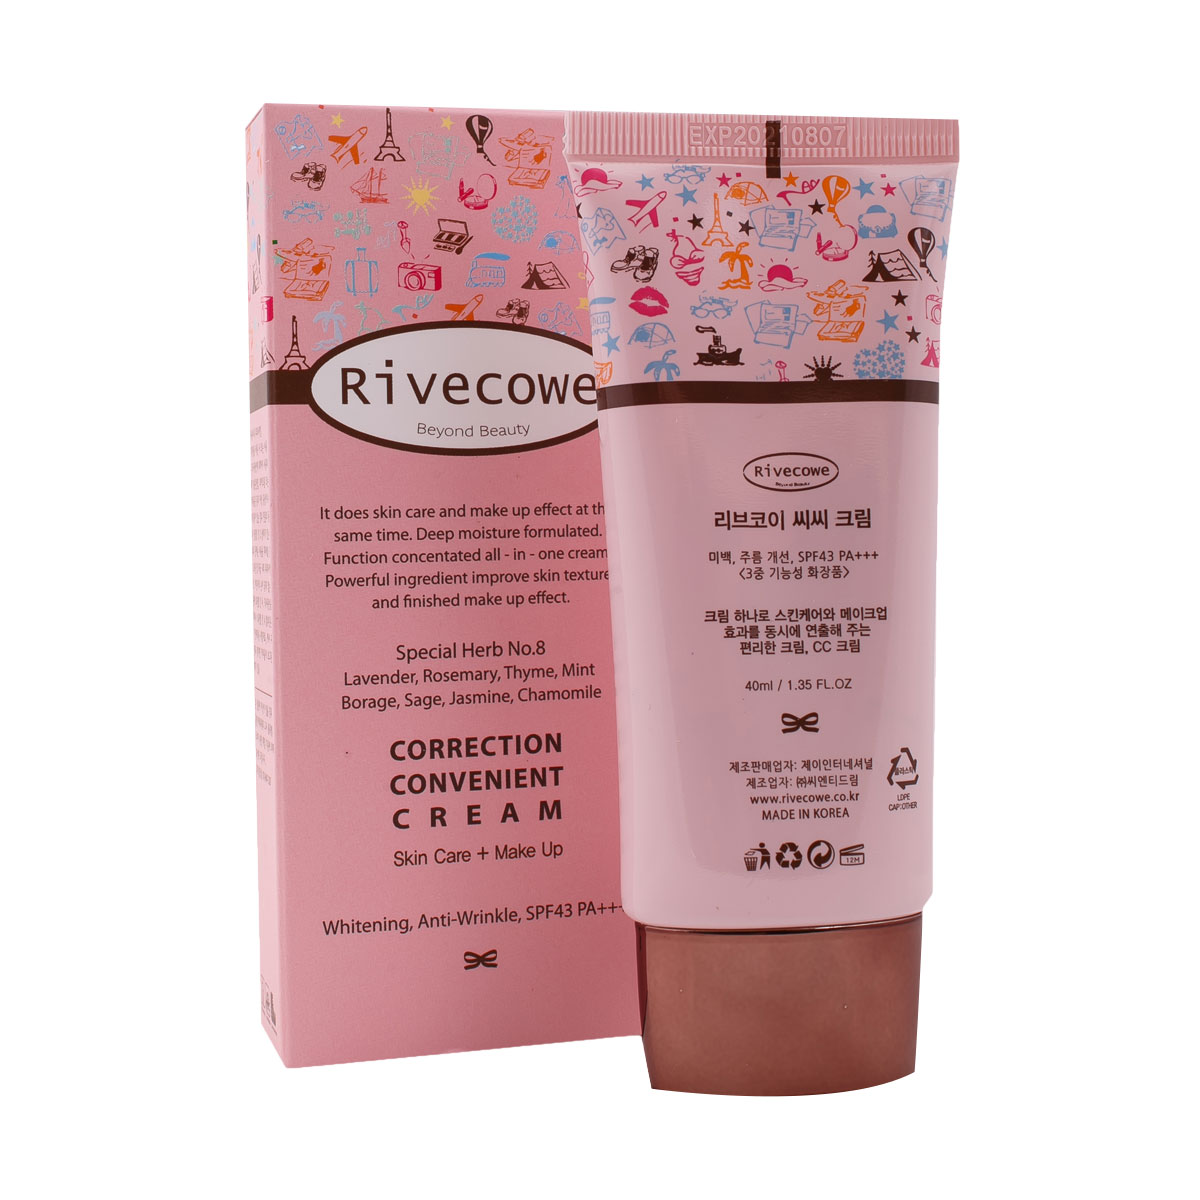 Тональный крем Rivecowe Beyond Beauty Correction Convenient Cream SPF43, 5шт по 5мл